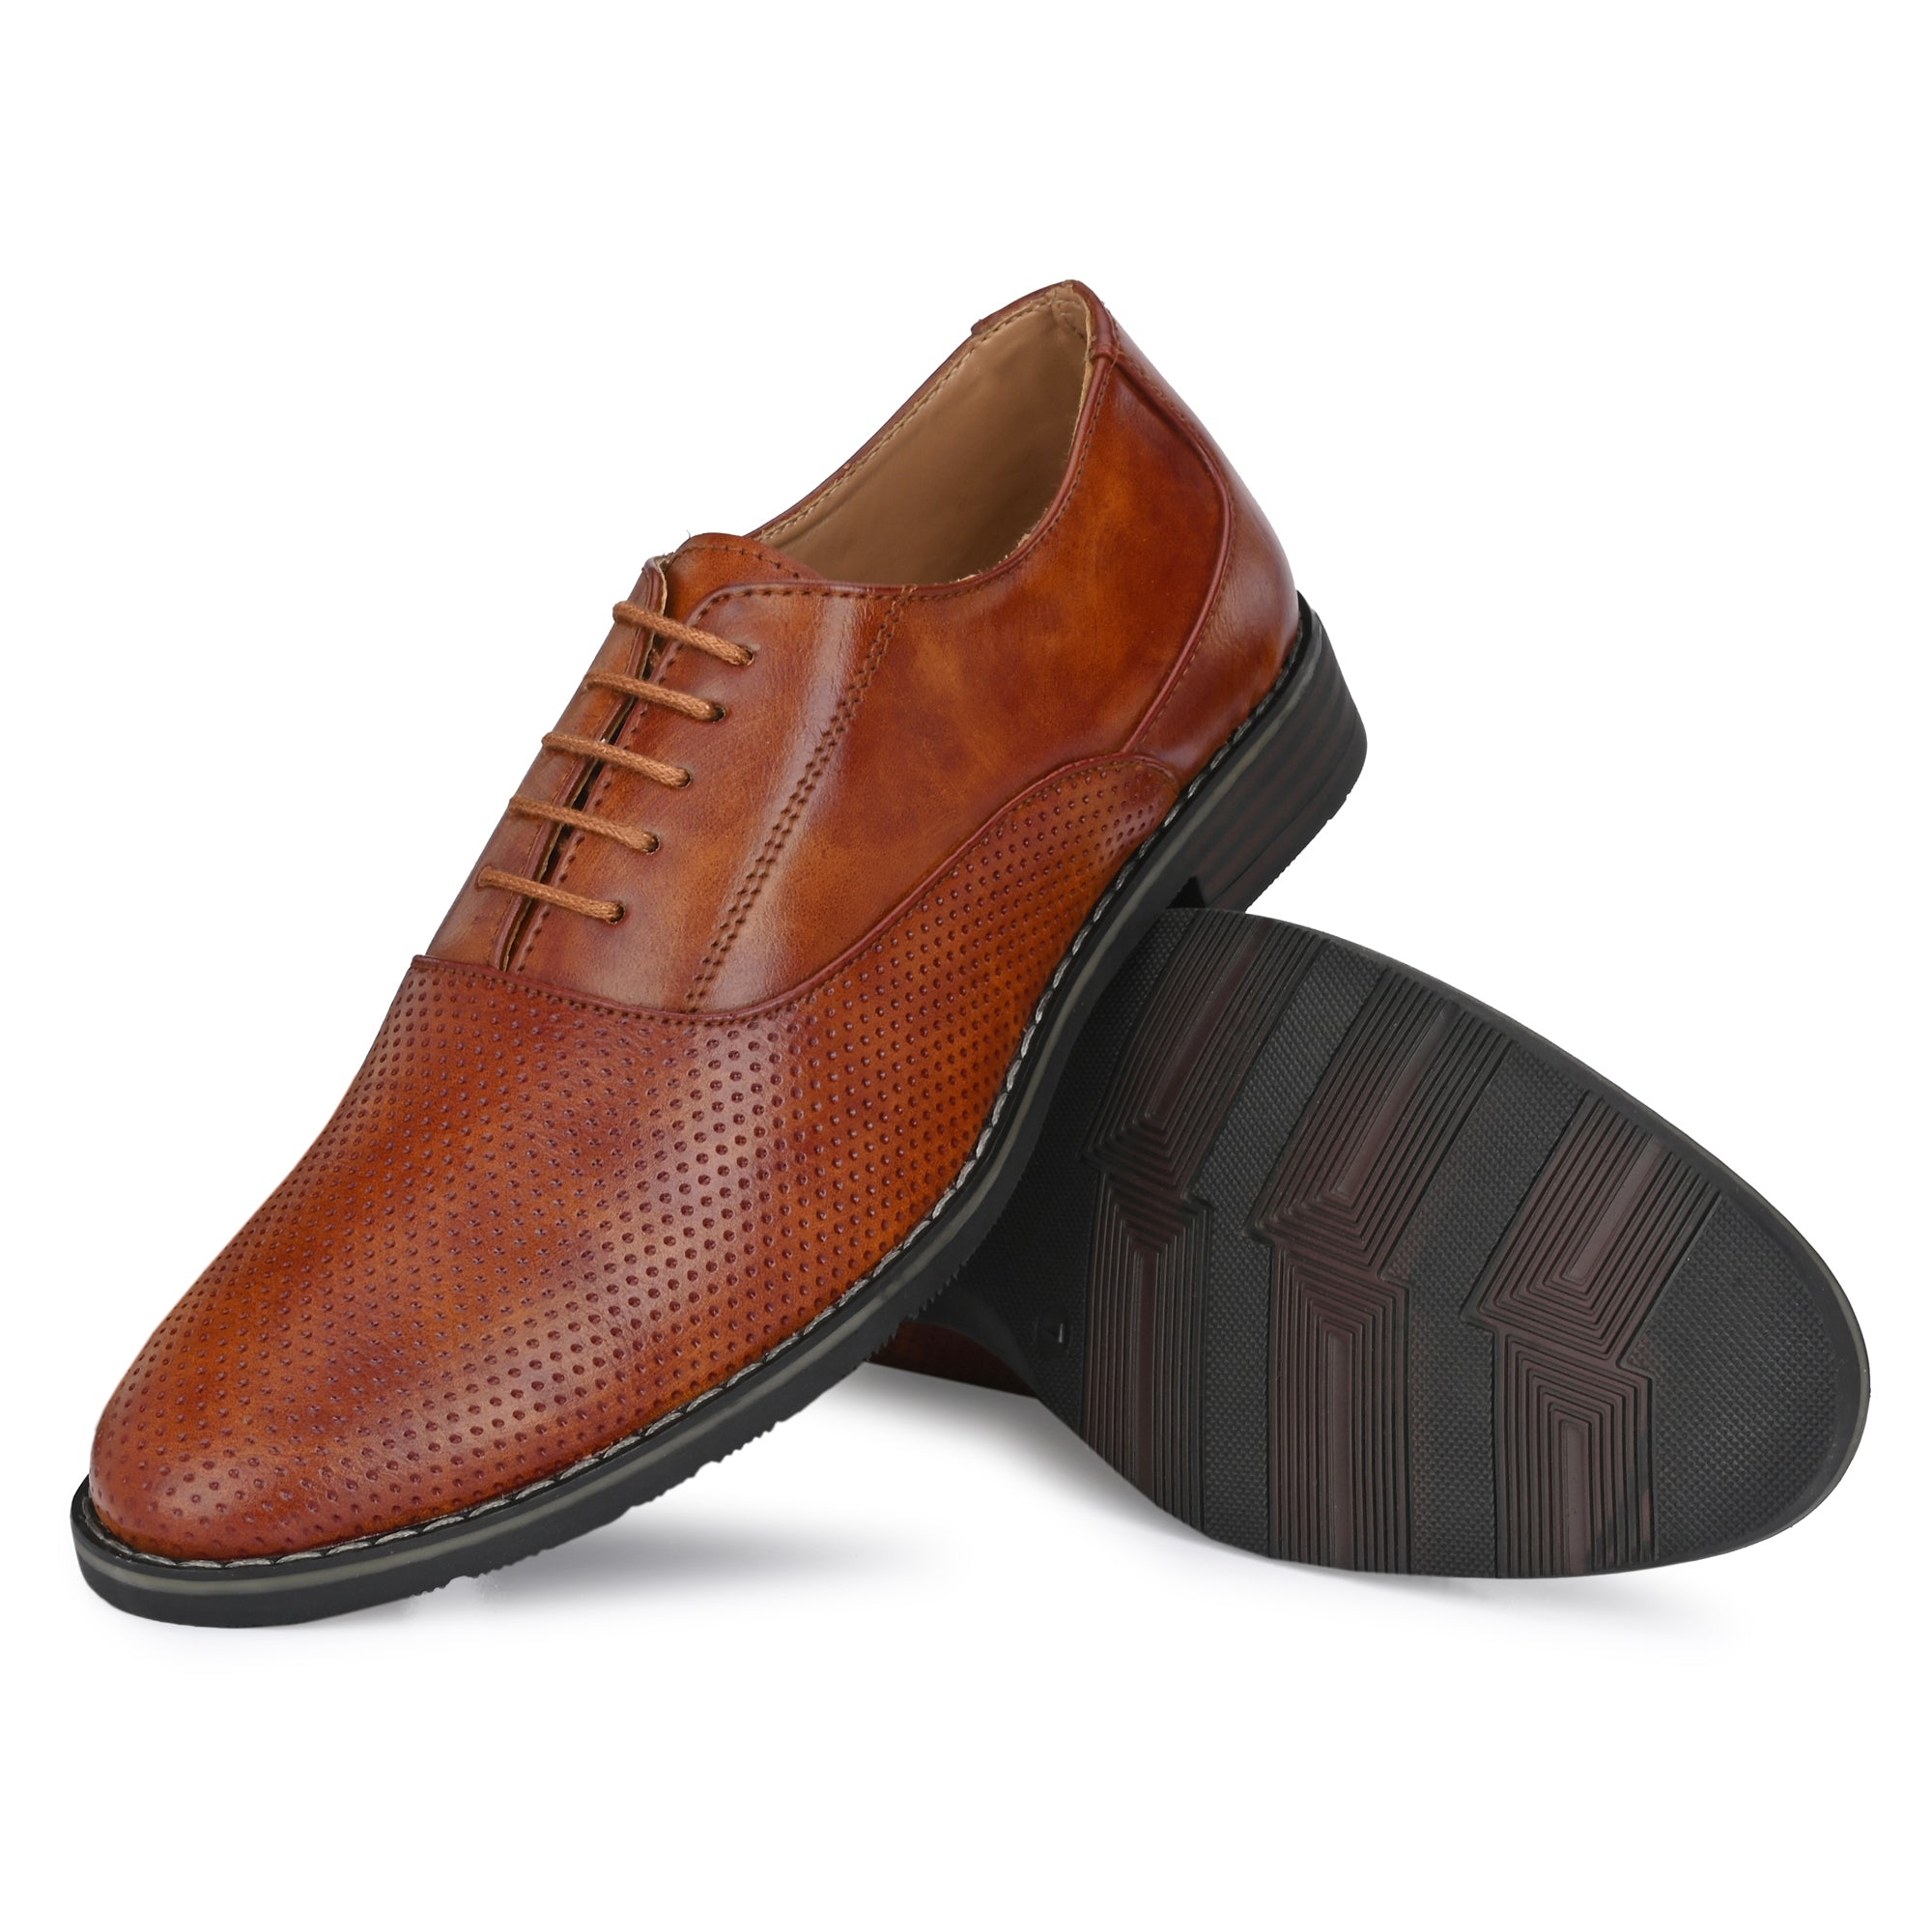 tan-formal-lace-up-attitudist-shoes-for-men-with-design-sp10c